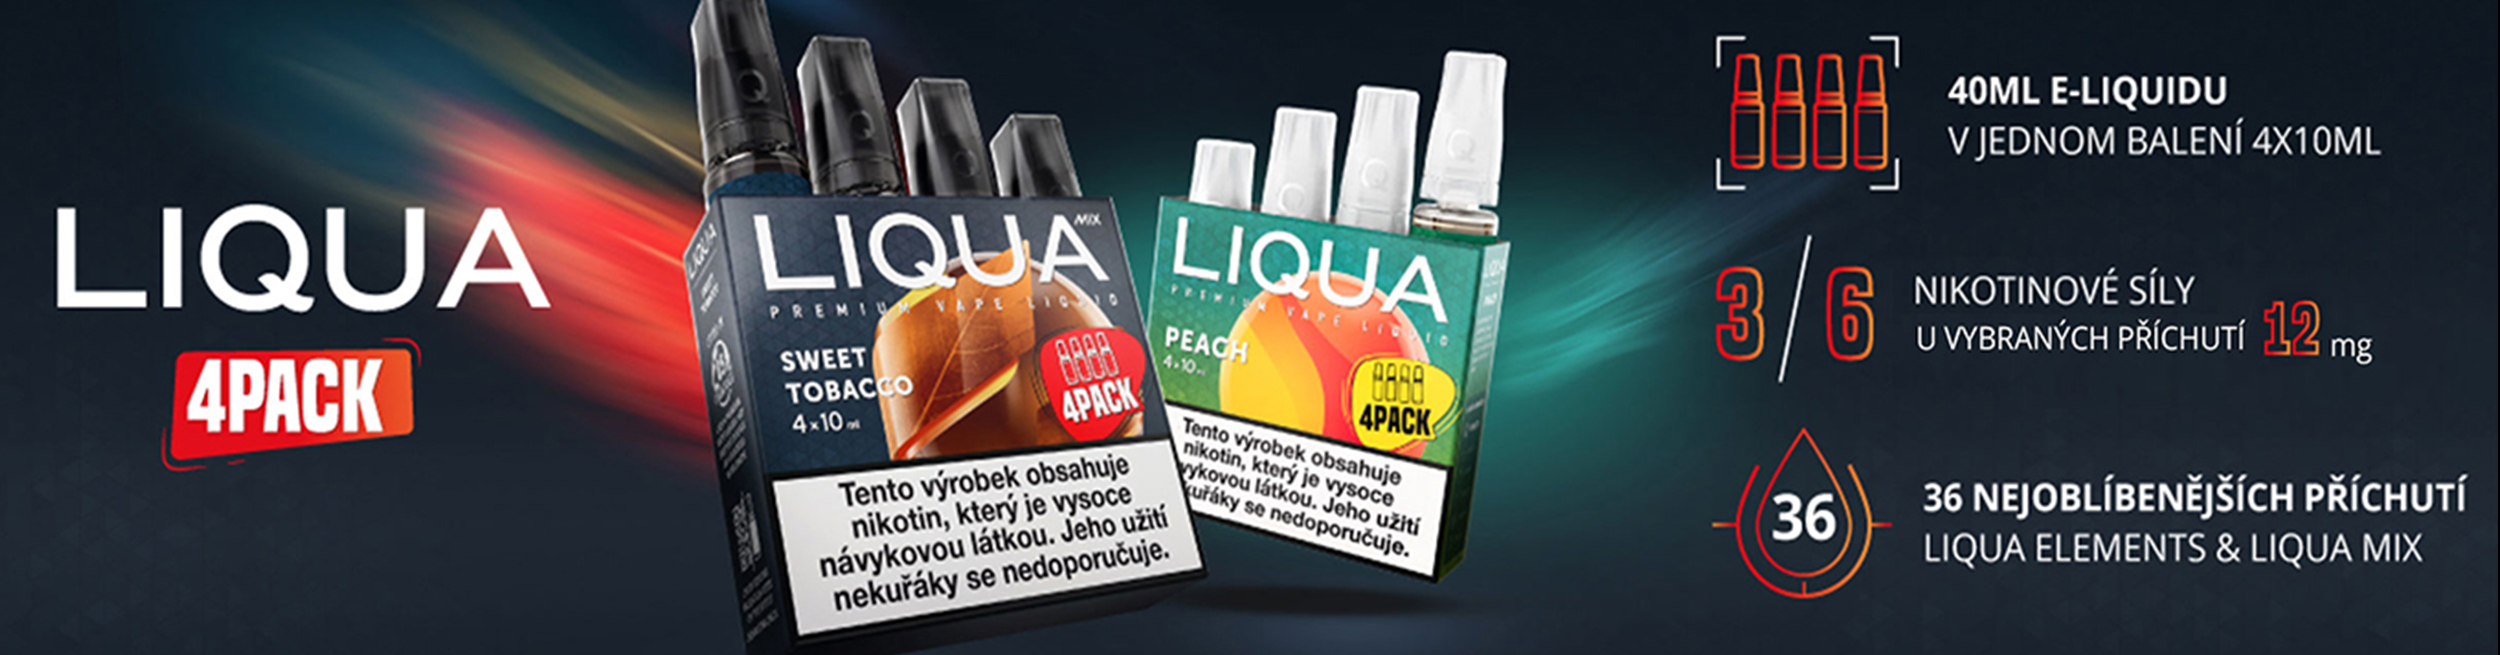 LIQUA 4 pack